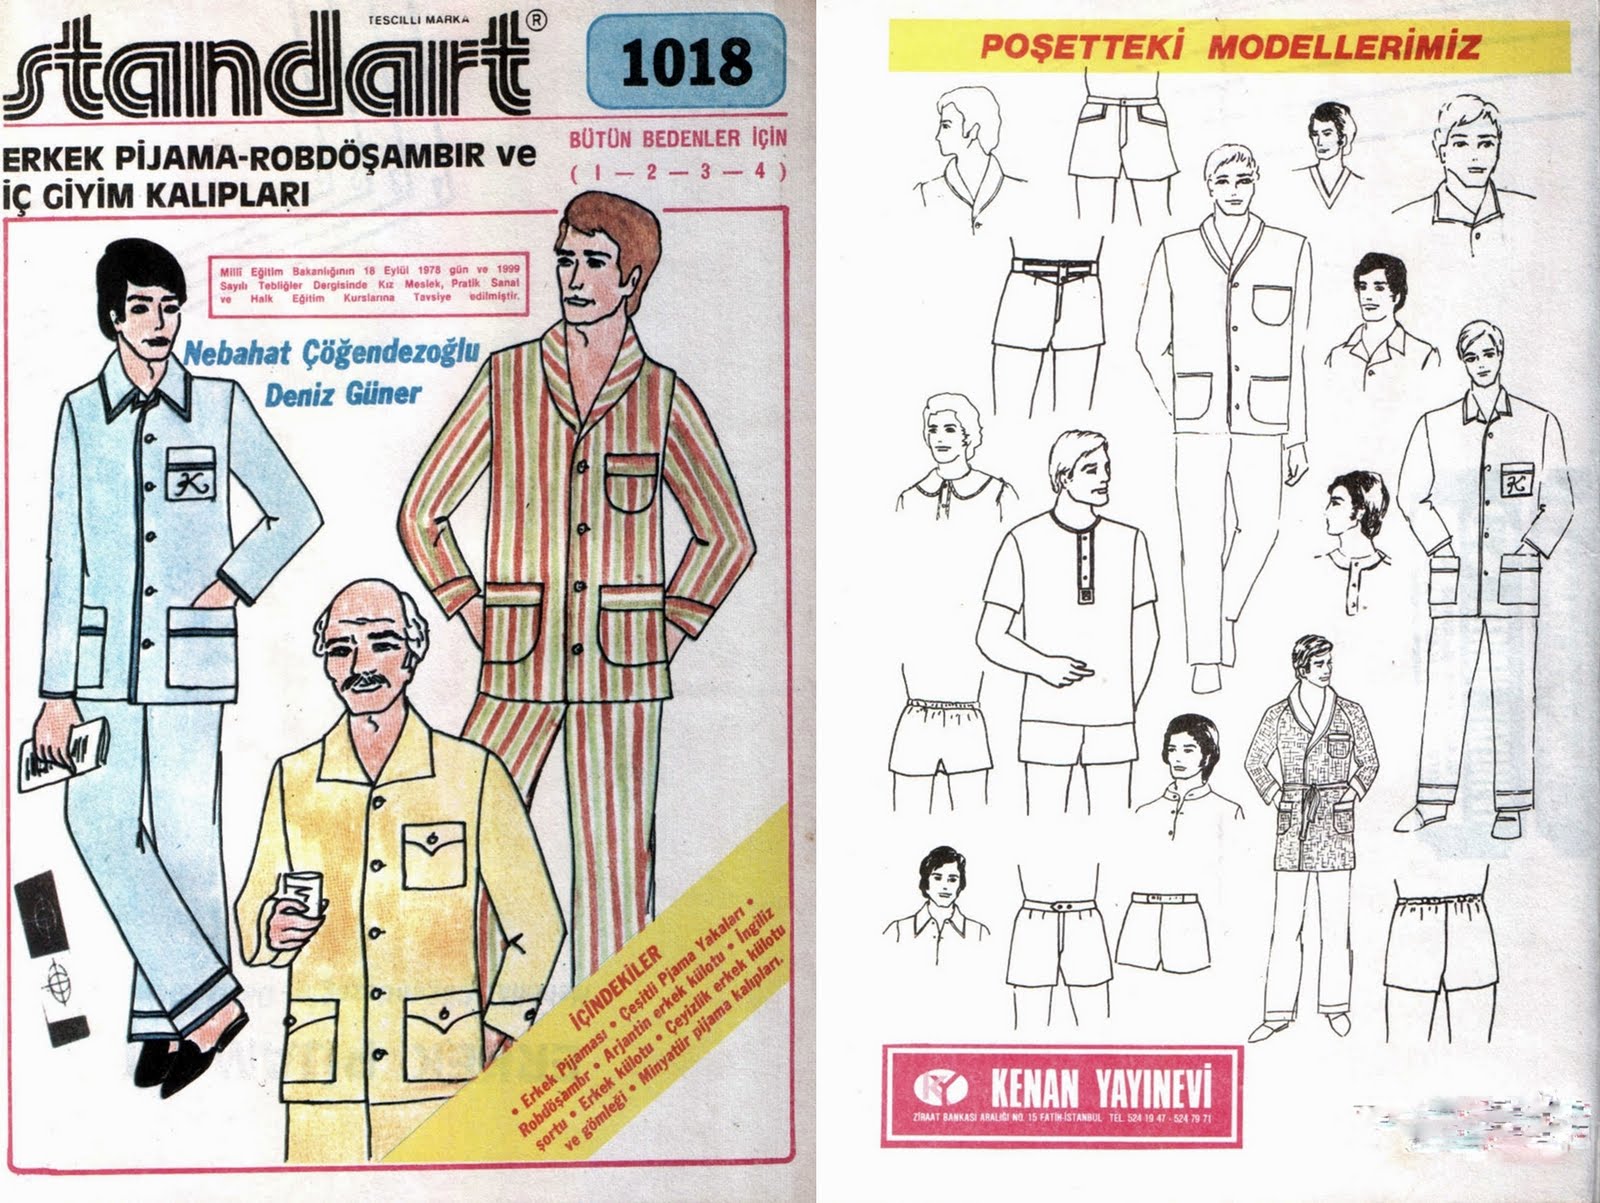 Standart Giyim Kaliplari Nakis Desenleri 1018 Erkek Pijama Ve Robdosambir Kaliplari